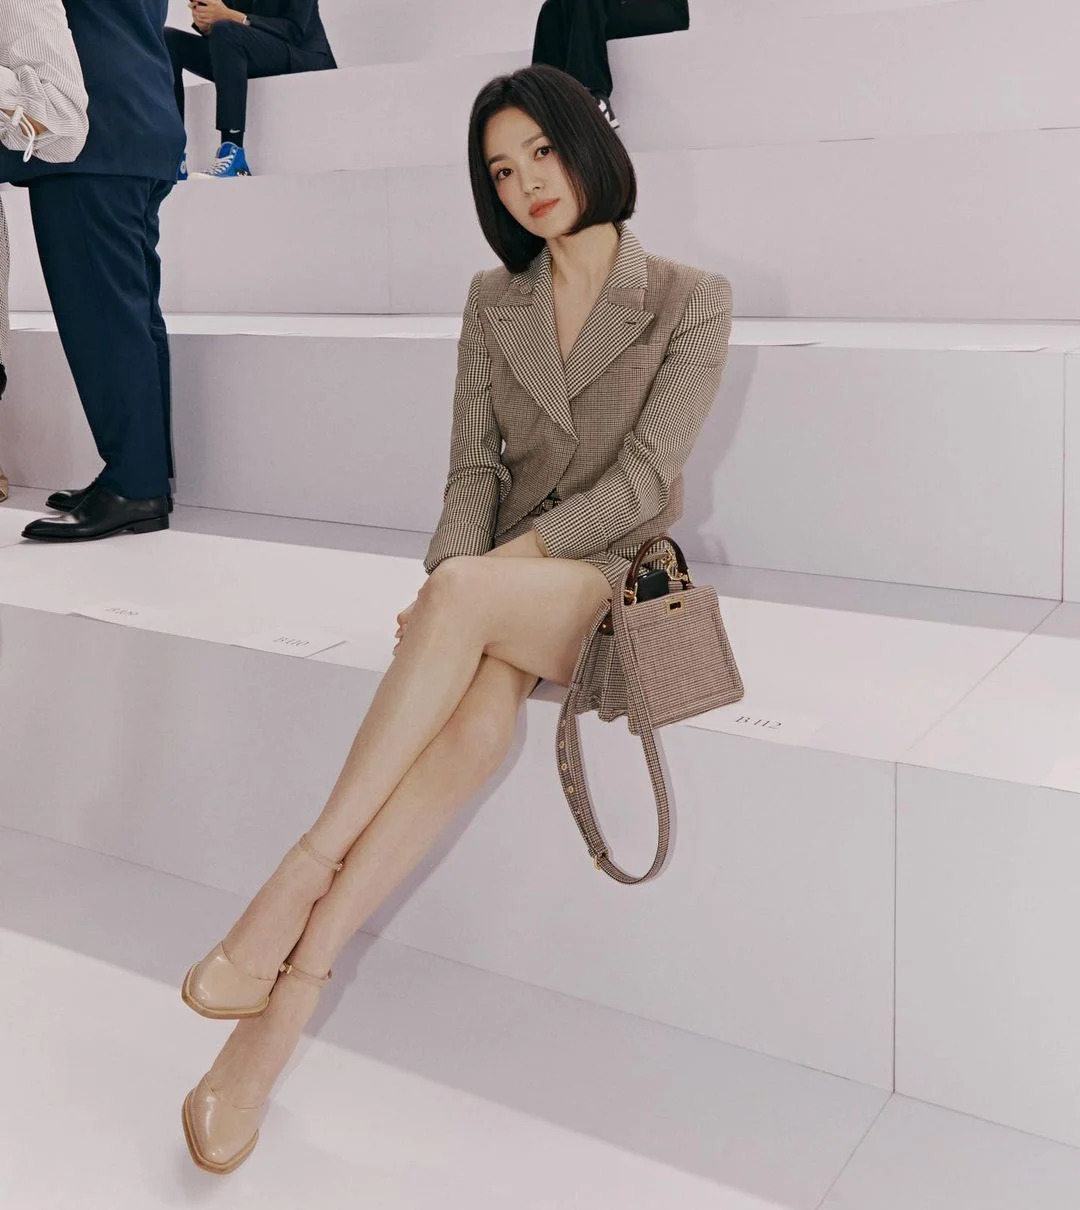 7749 outfit đẳng cấp chứng minh Song Hye Kyo là đại sứ hoàn hảo của Fendi - Ảnh 3.